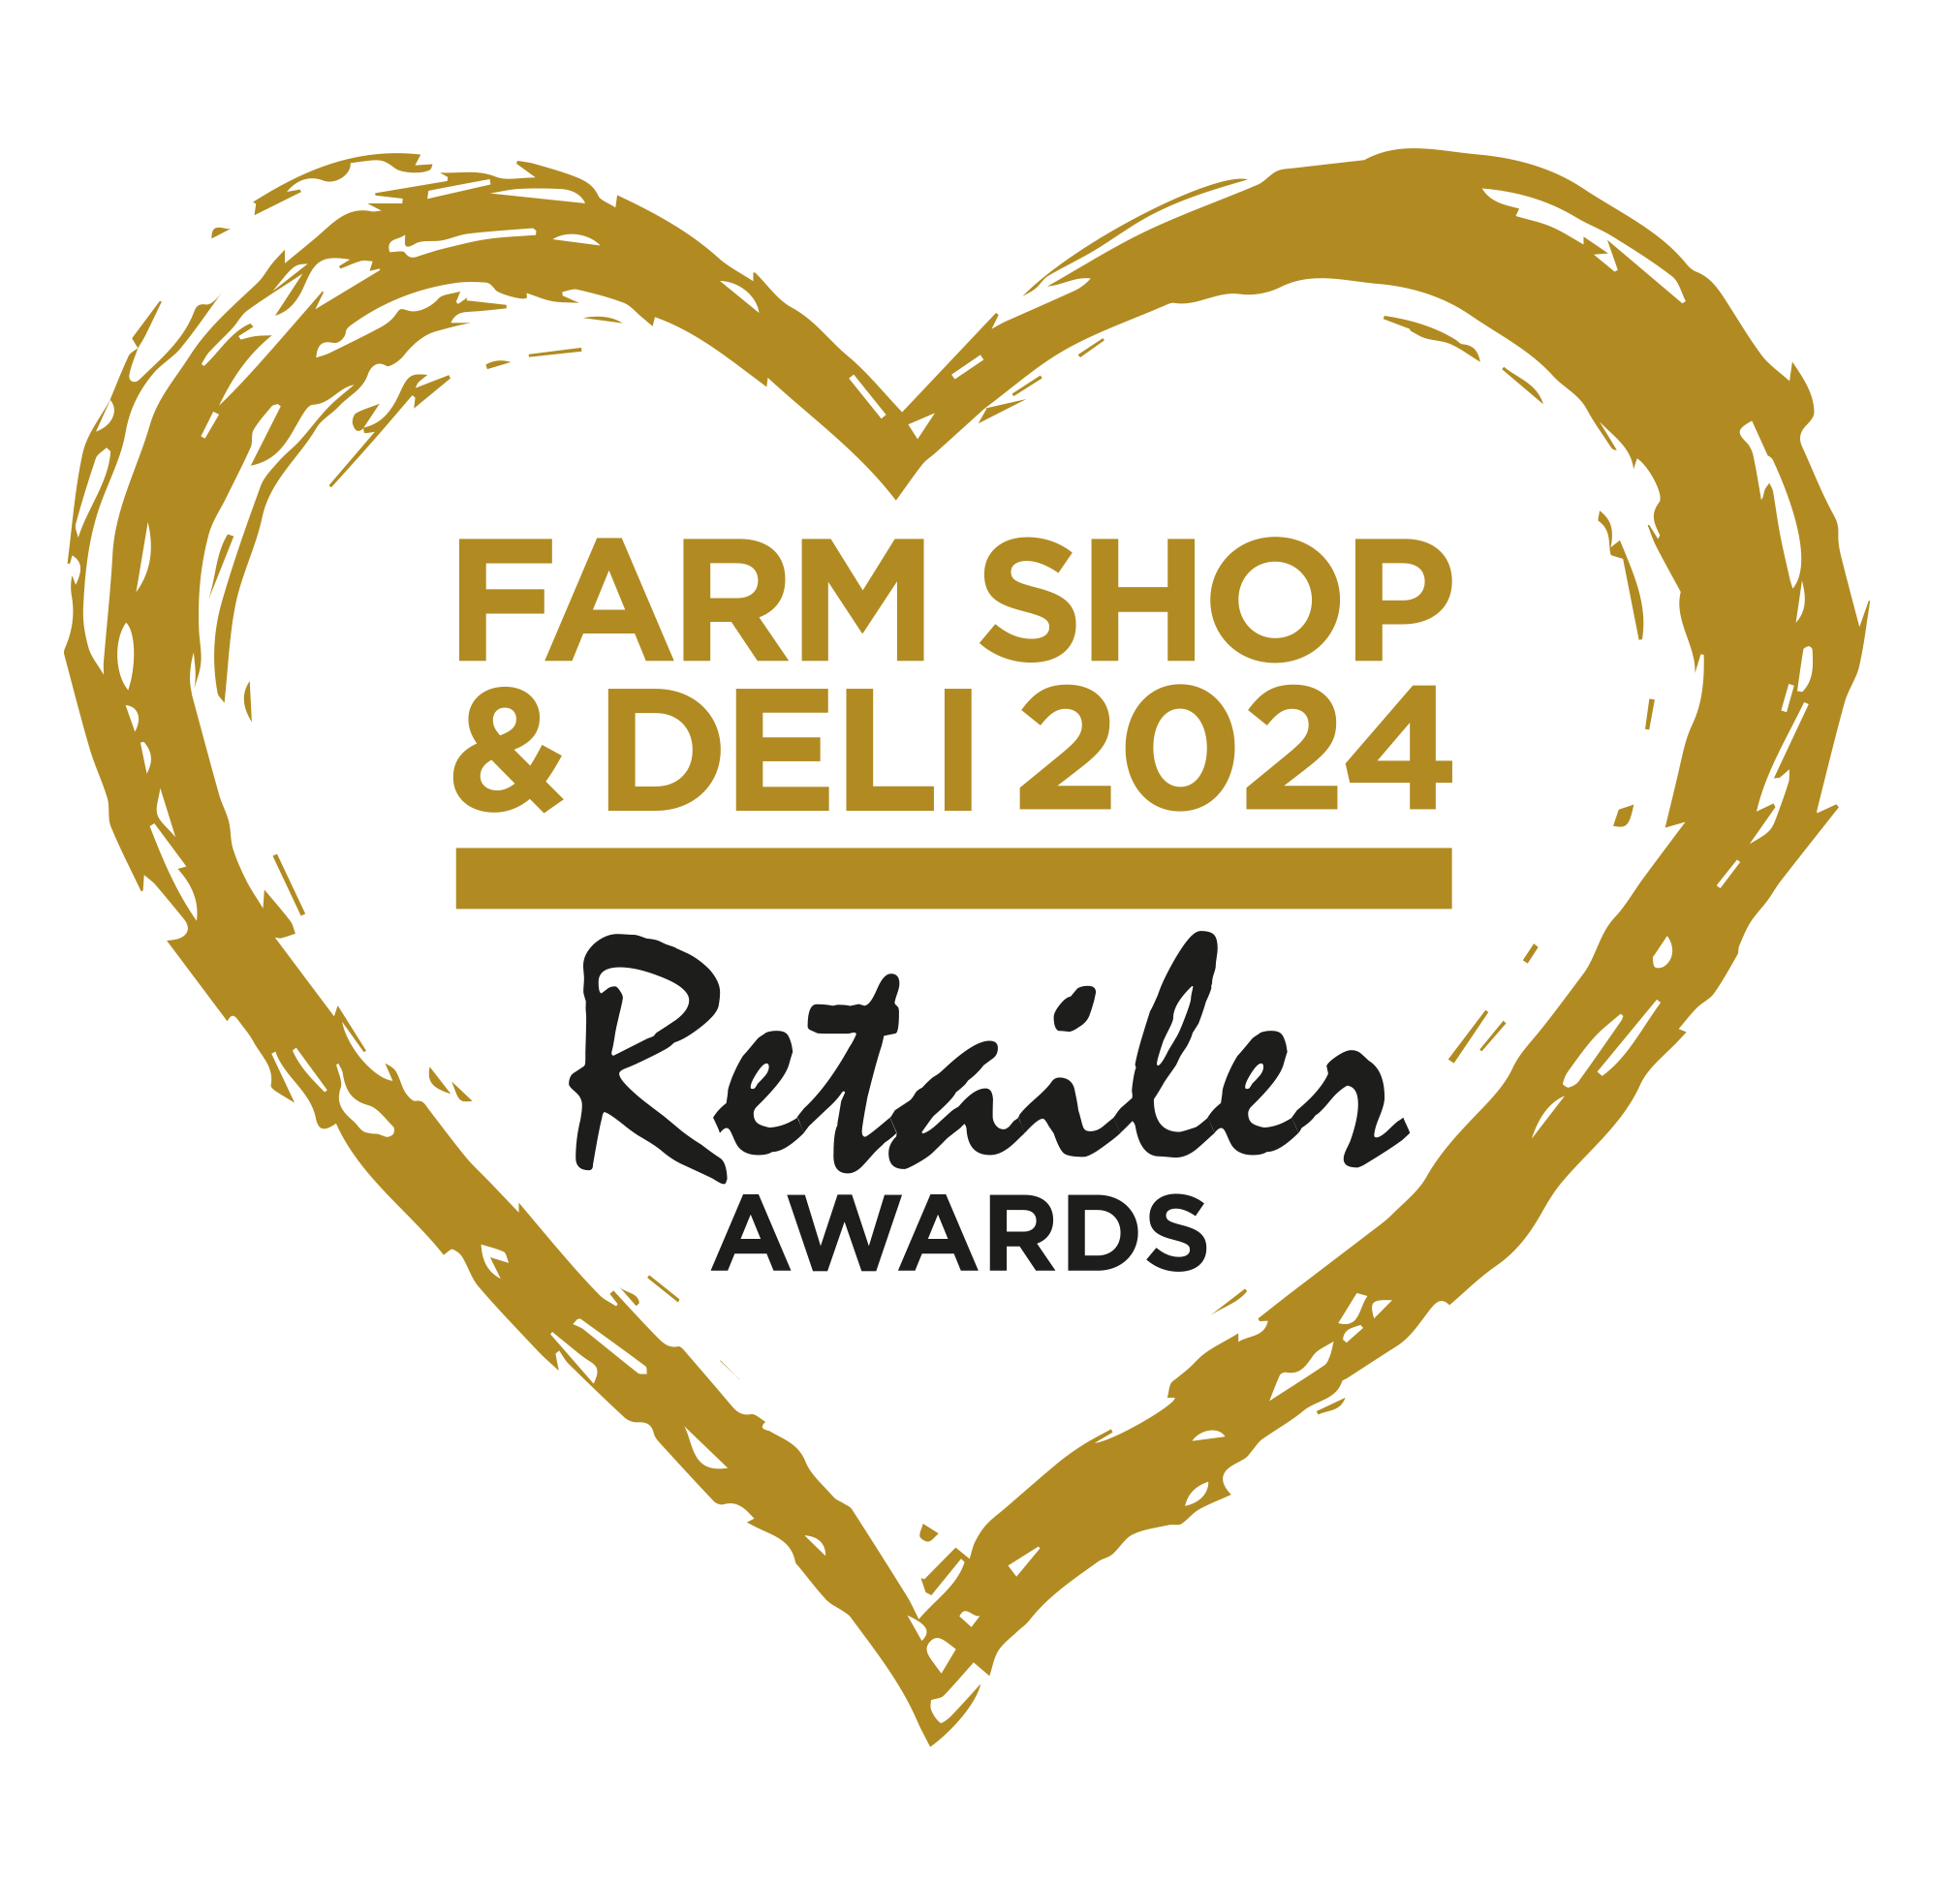 FSD_Retailer_Awards_logo_24.png